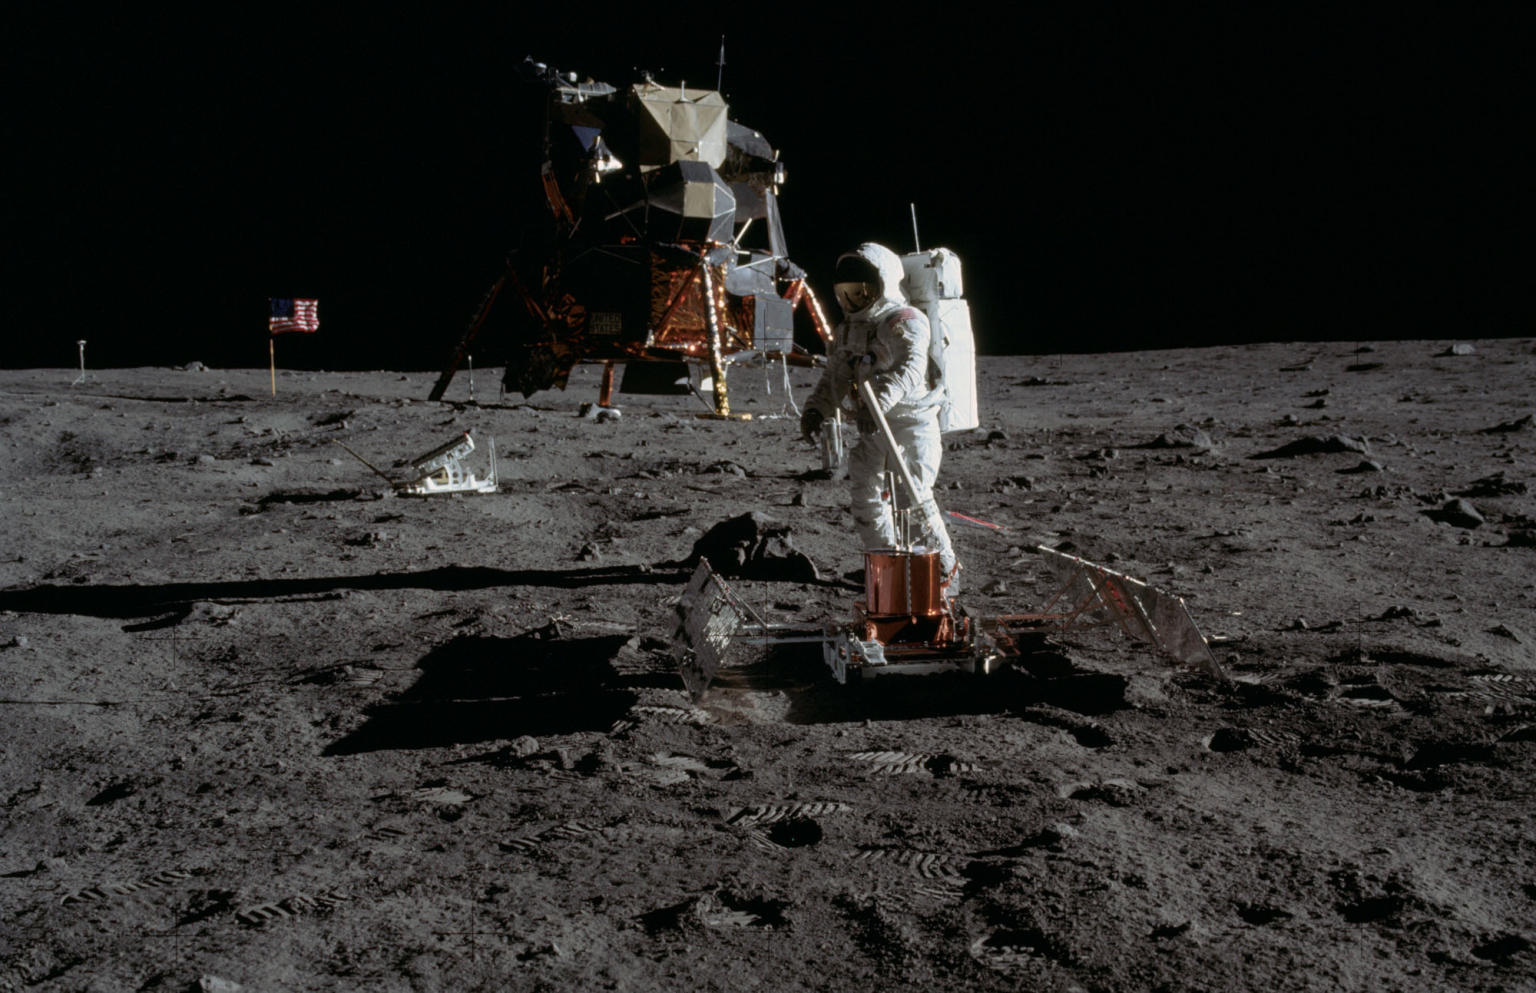 Корабль на поверхности луны. Аполлон 11 1969. Апполо 11 на Луне. Миссия Аполлон 11.